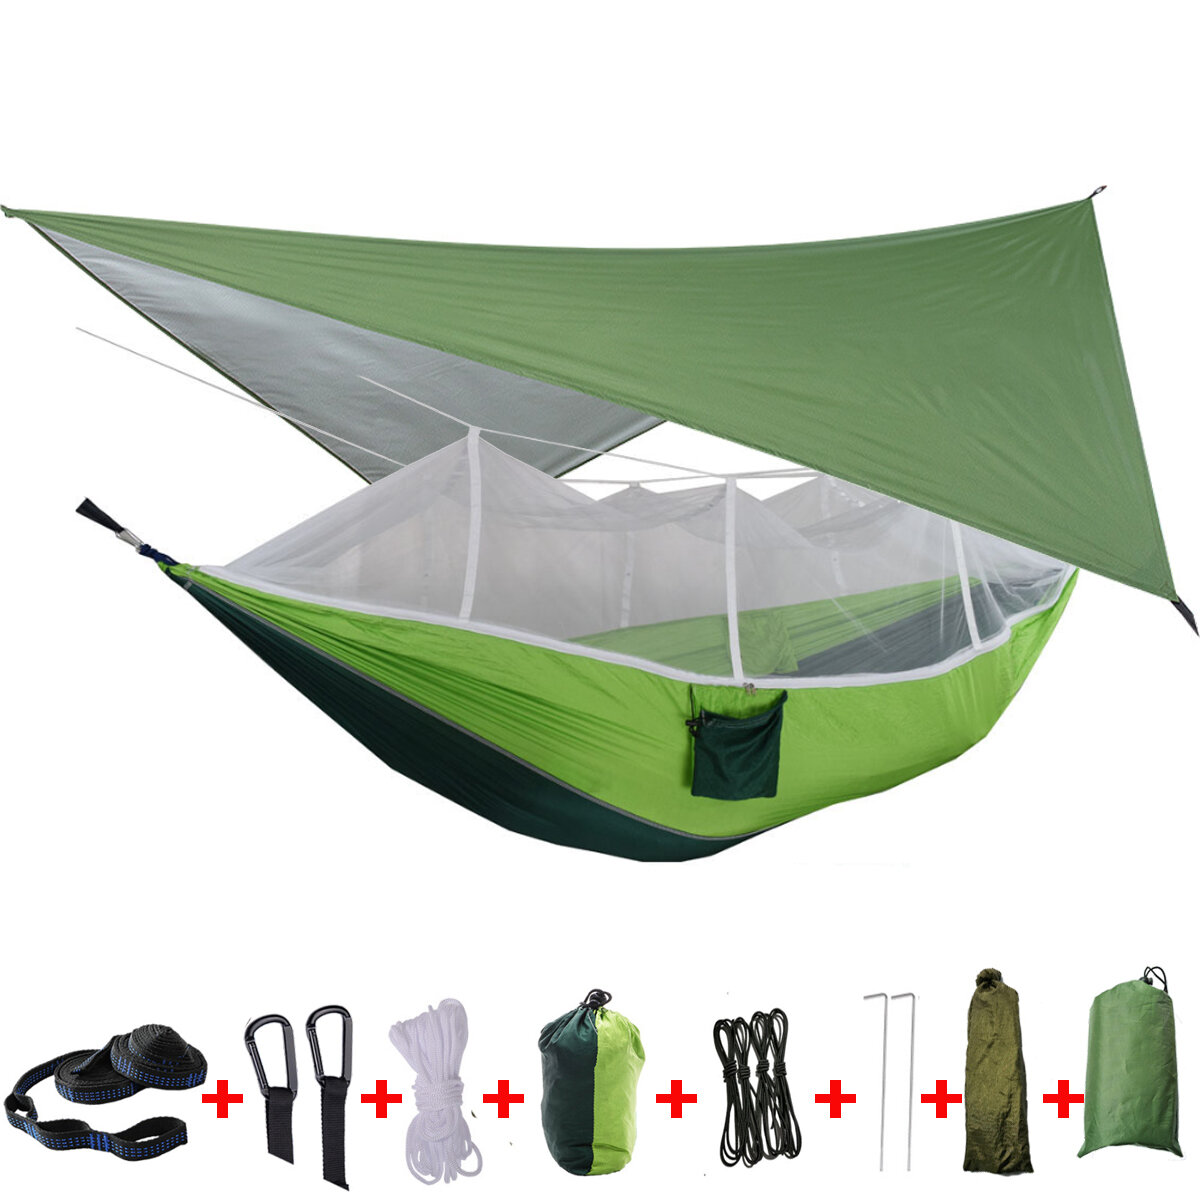 IPRee® 2-persoons camping hangmat tent met muskietennet, regenfly tarp cover en dubbel hangend bed voor outdoor reizen